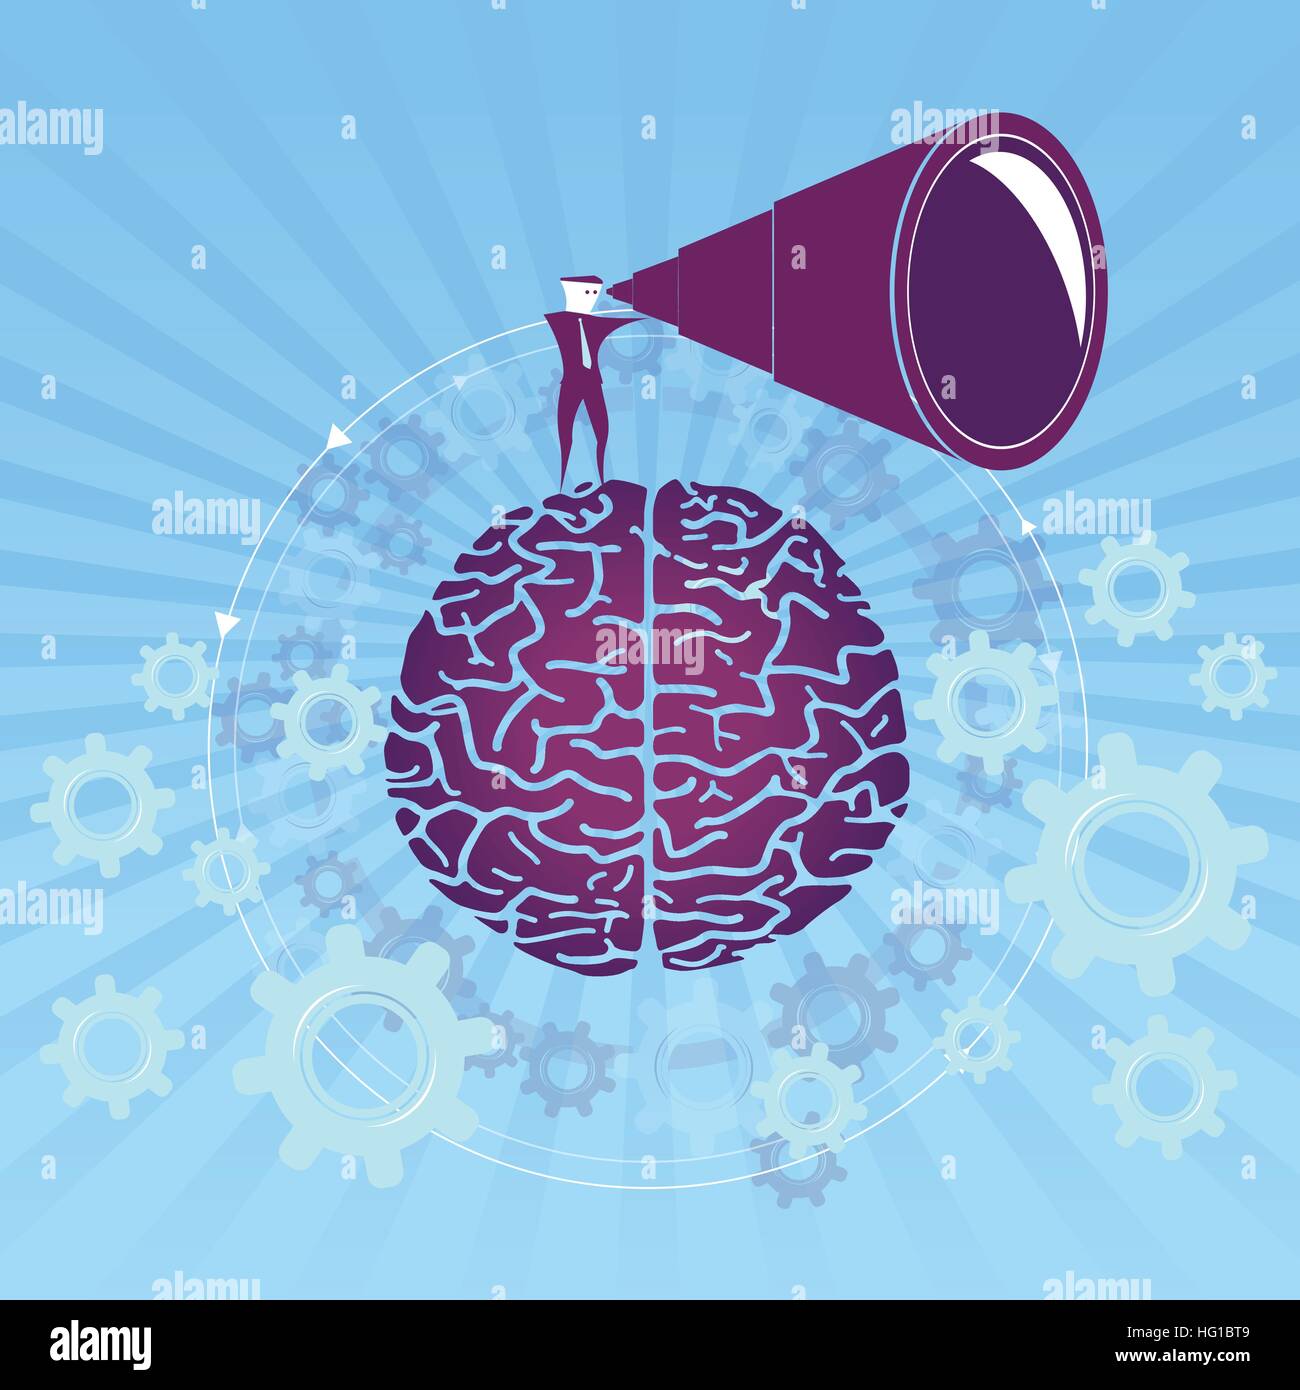 Cerca la mente / guardando il cervello. Illustrazione Vettoriale con cervello e sfondo blu. Illustrazione Vettoriale